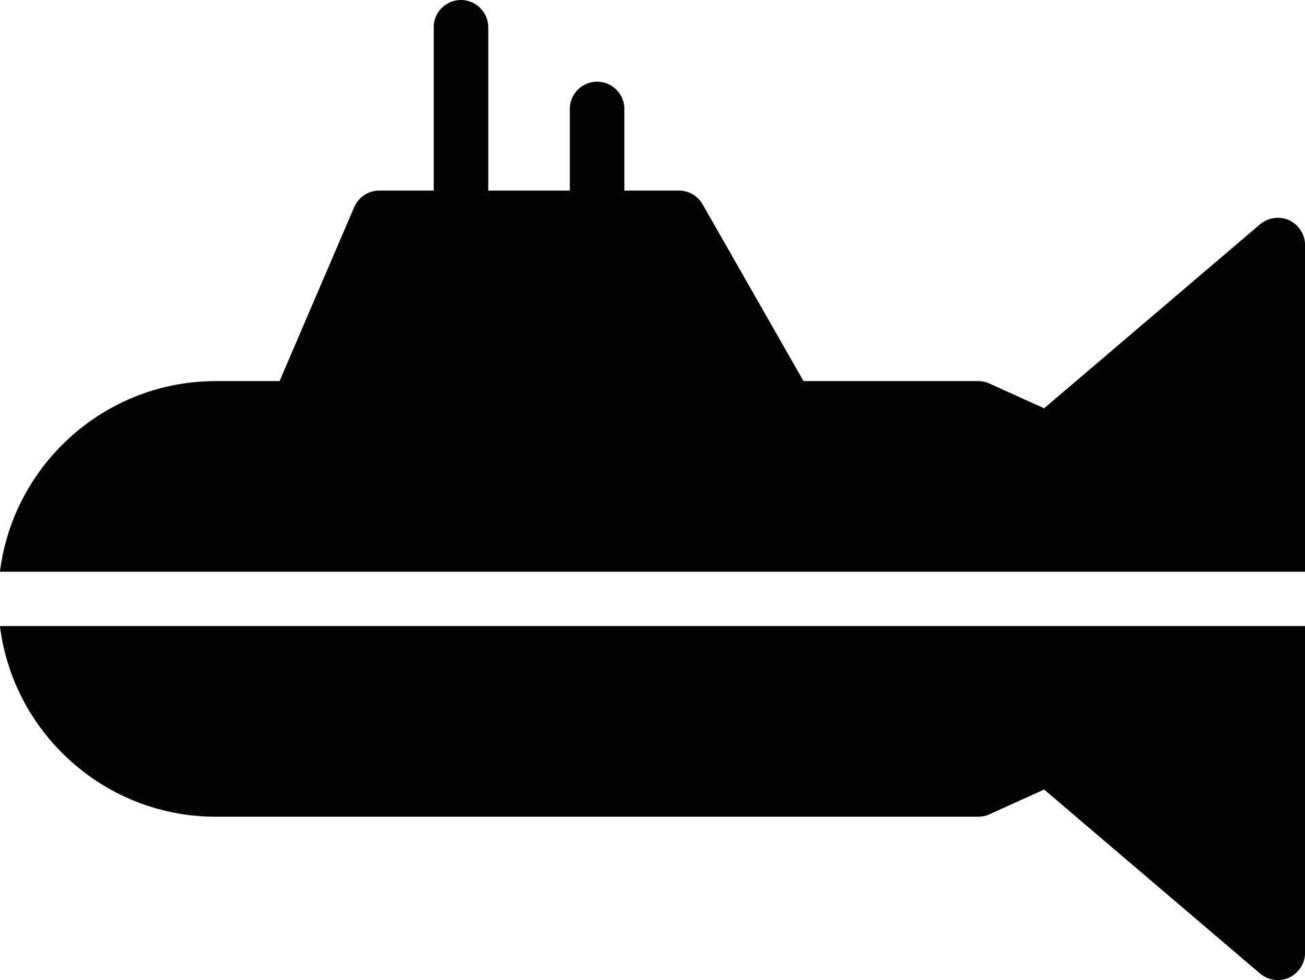 ilustración de vector submarino en un fondo. símbolos de calidad premium. iconos vectoriales para concepto y diseño gráfico.